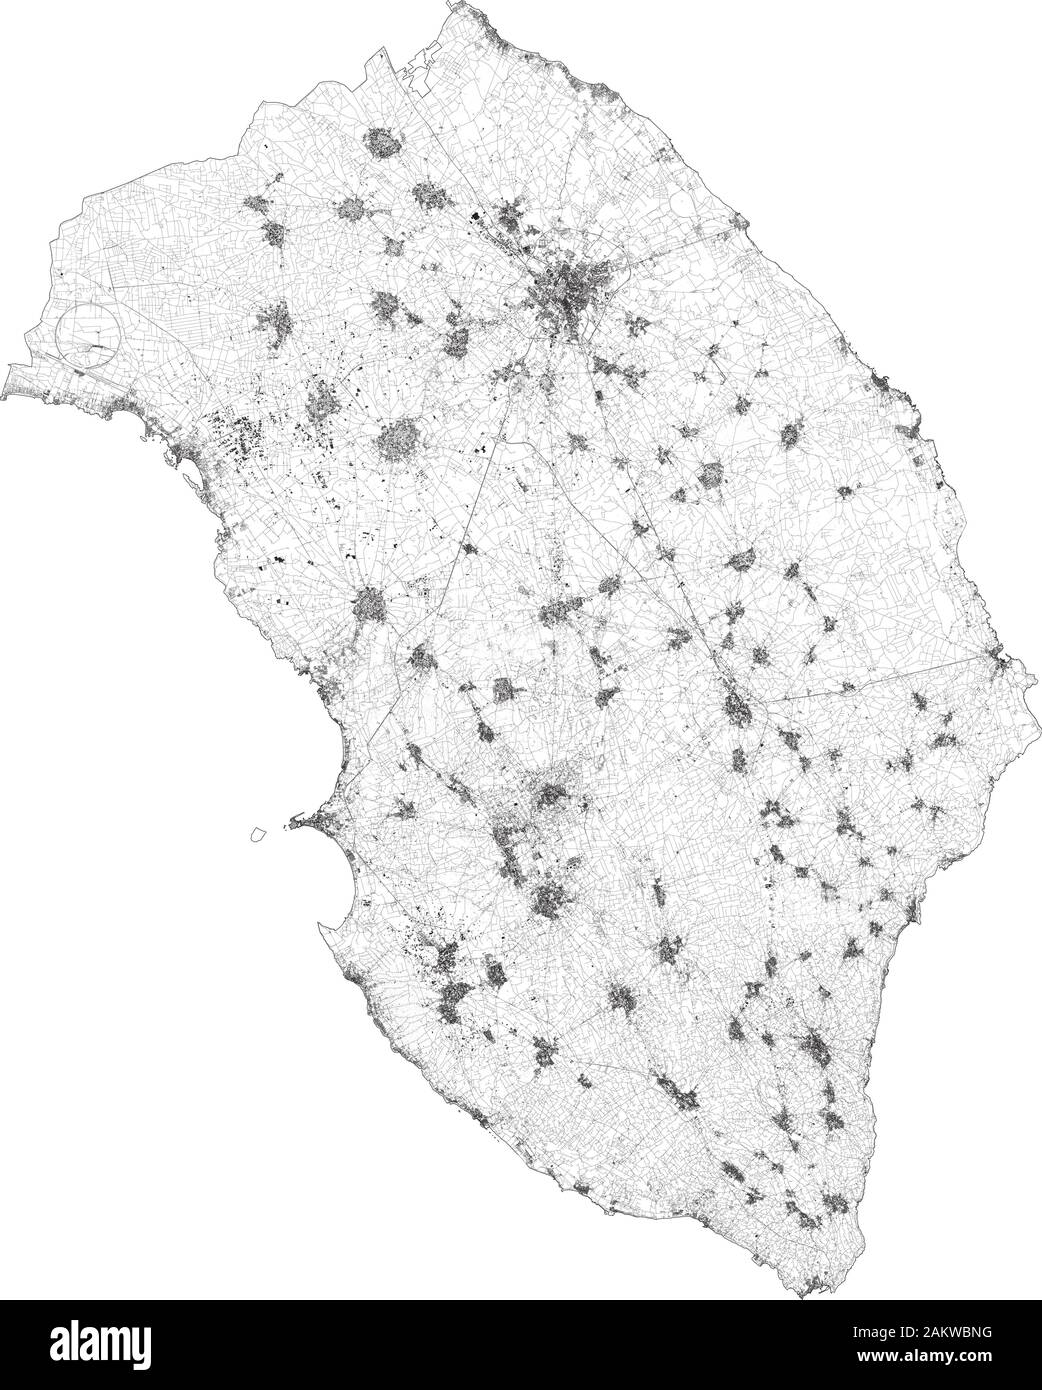 Sat-Karte der Provinz Lecce Städte und Straßen, Gebäude und Straßen der Umgebung. Region Apulien, Italien. Karte Straßen Stock Vektor